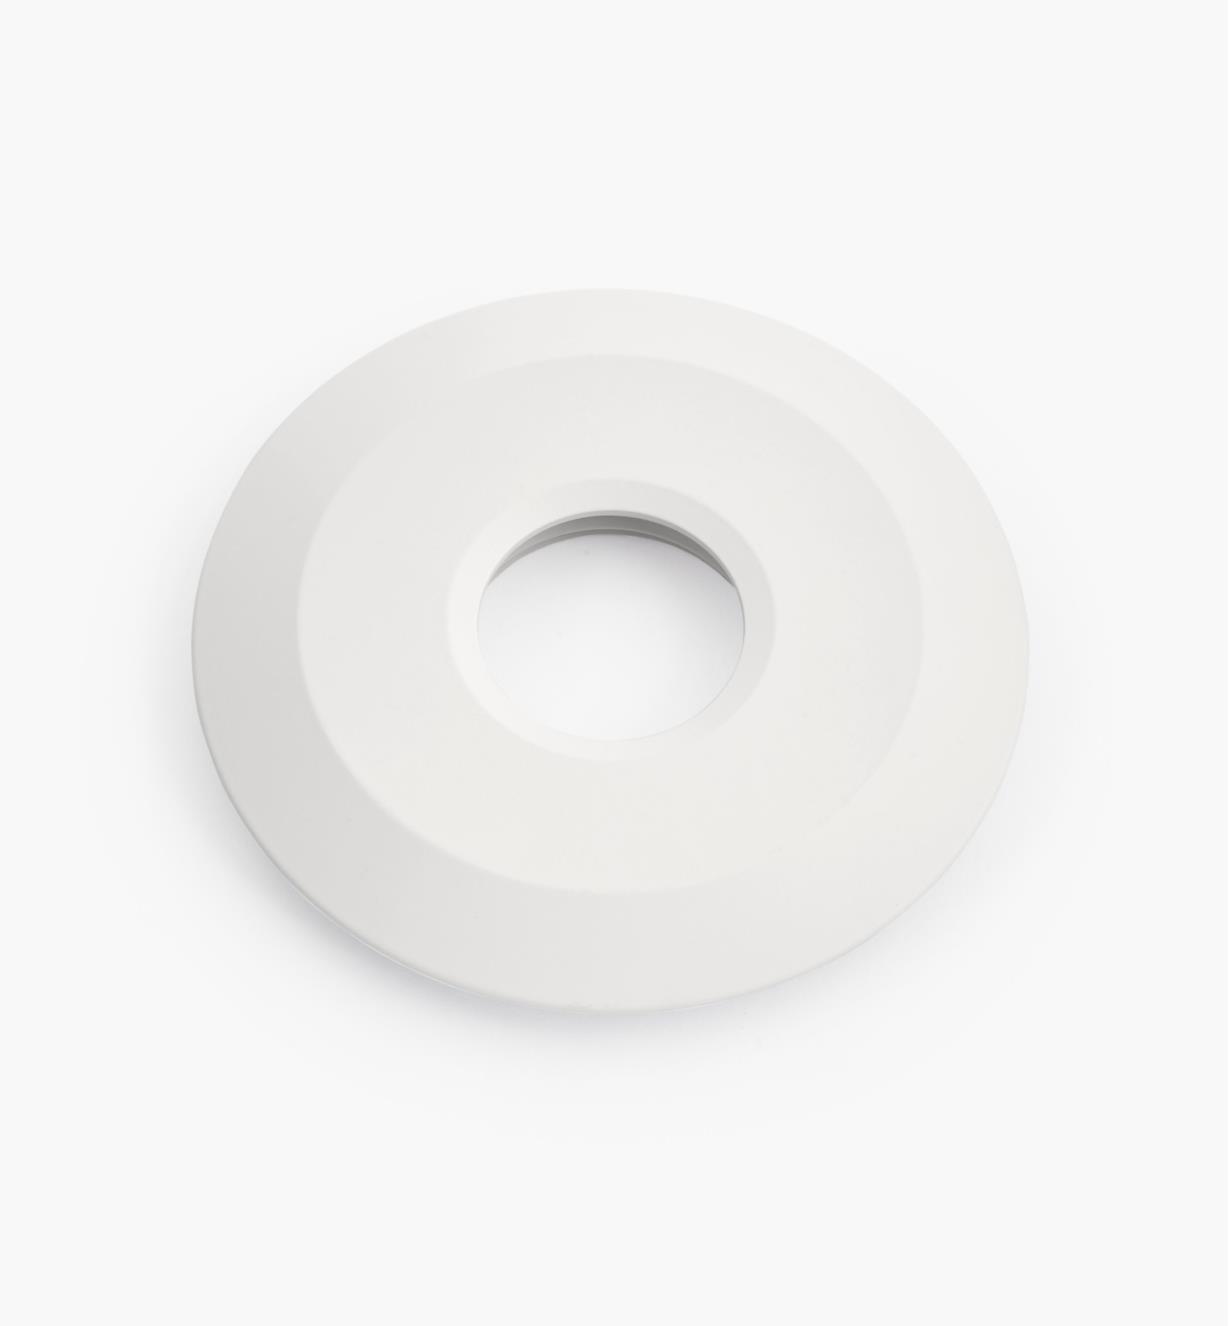 00U4360 - 2 3/4" White Round Aluminum Trim Ring